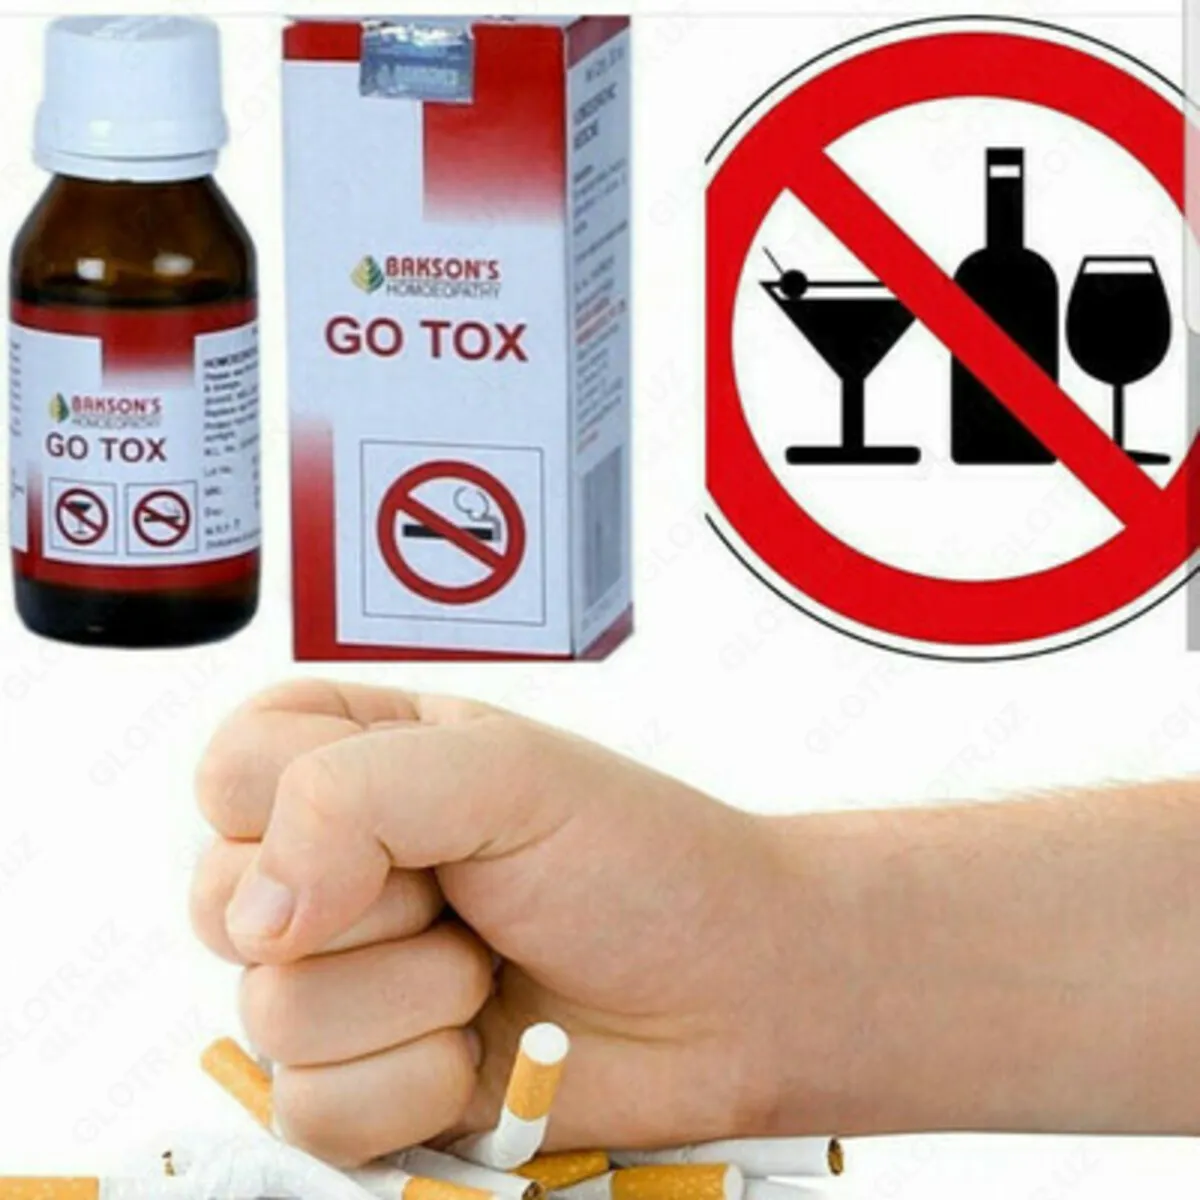 GO TOX tomchilari alkogol va nikotinning toksik ta'sirini kamaytirish uchun#1